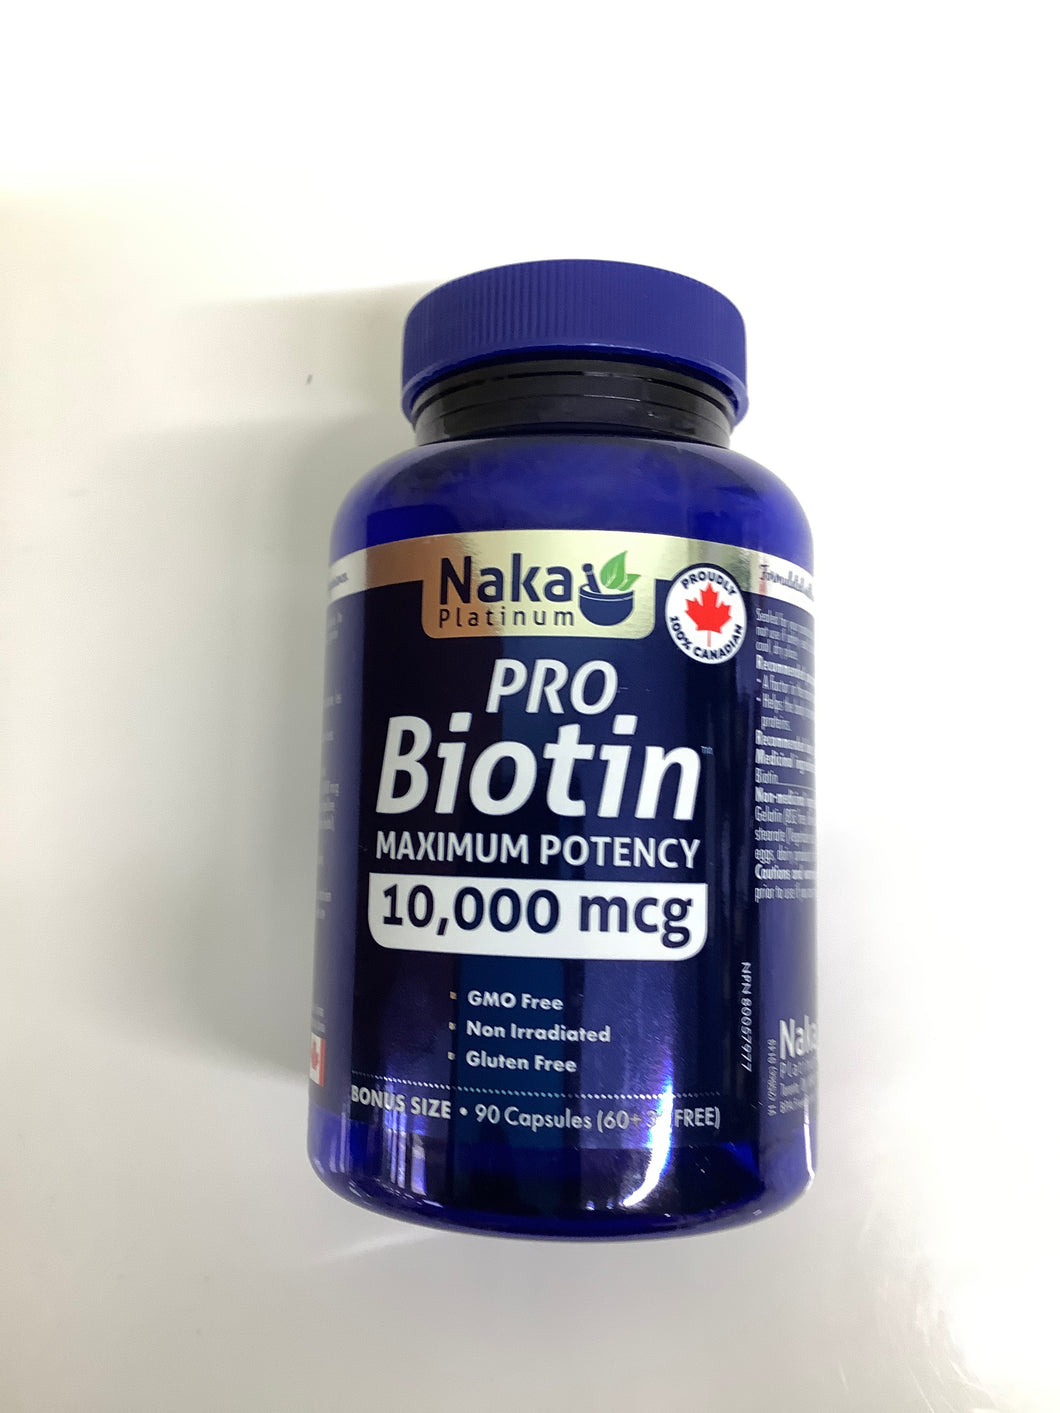 Naka Pro Biotin